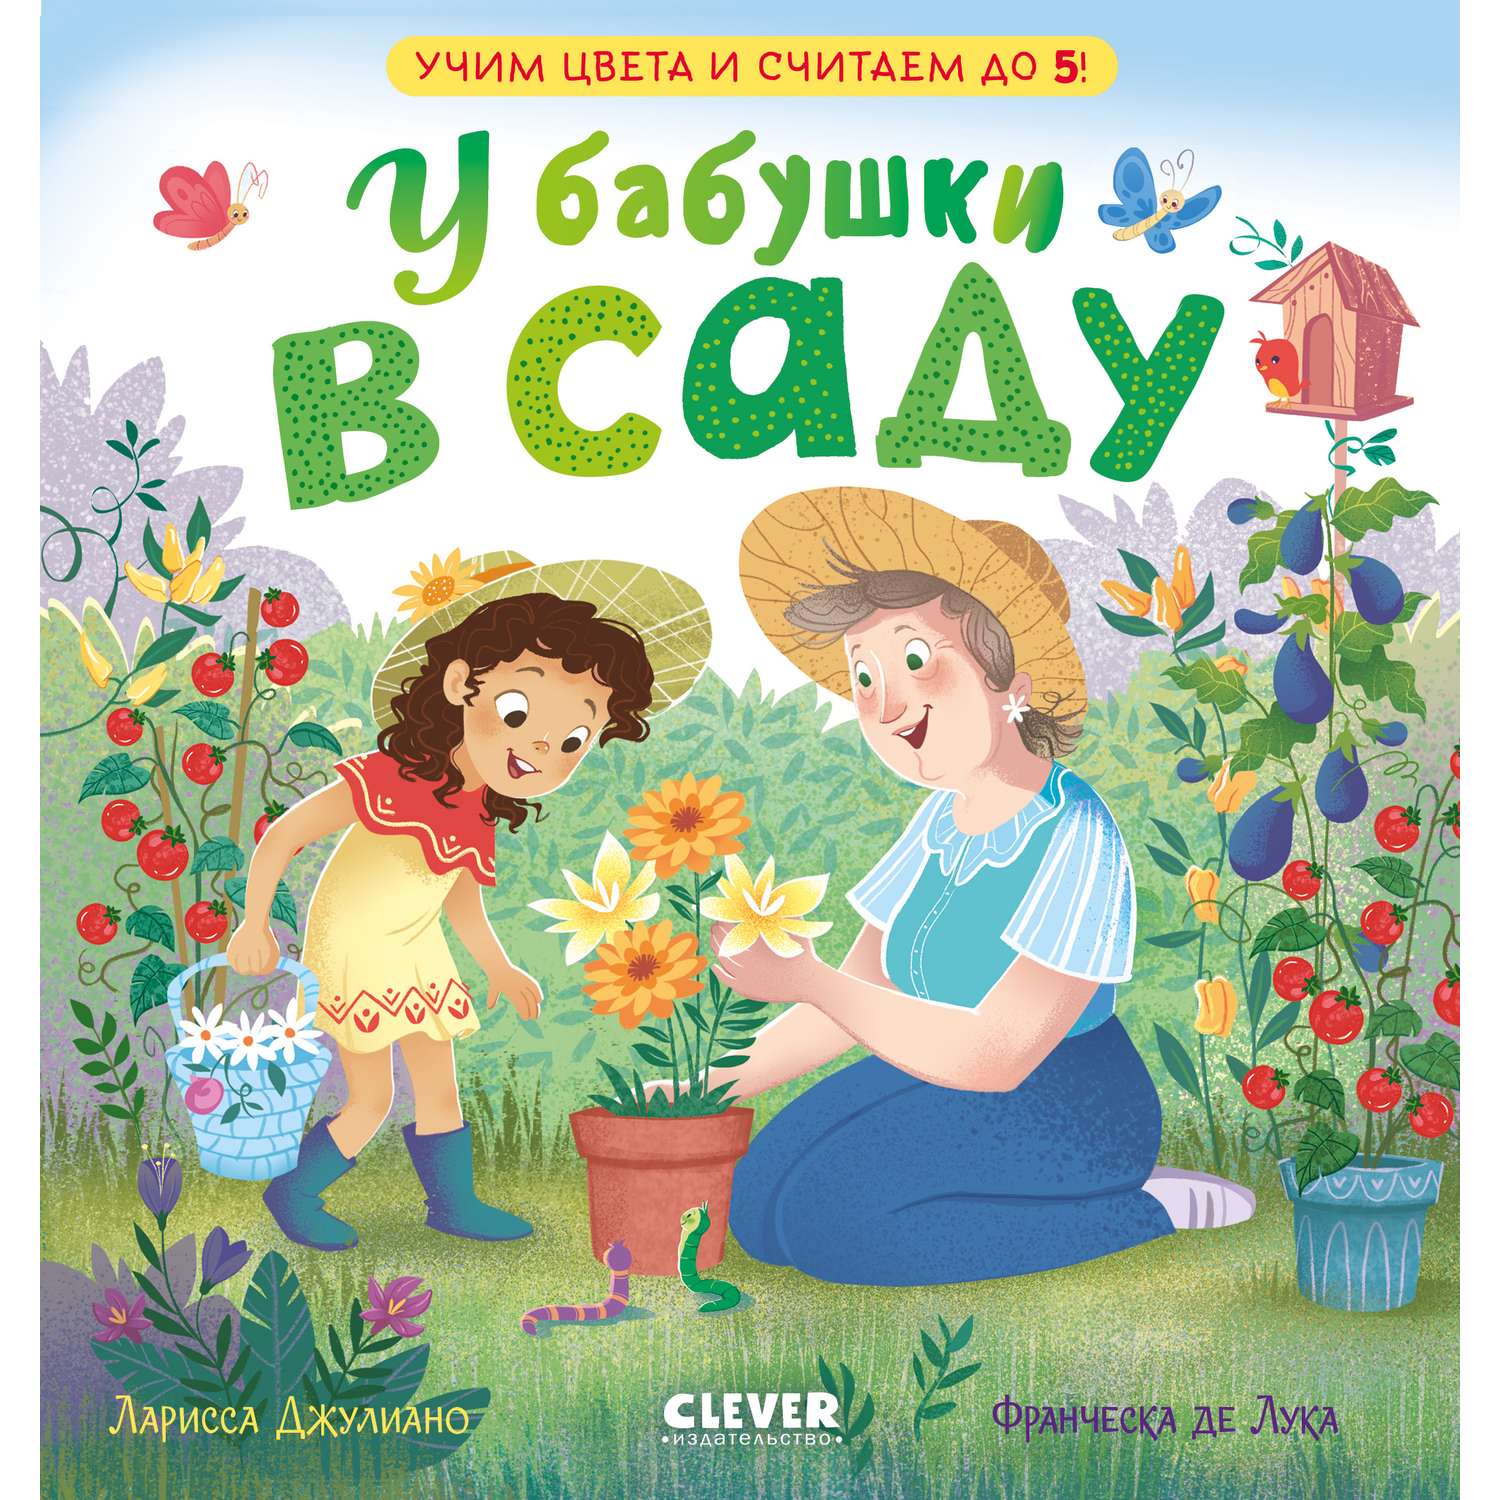 Книга Clever Издательство У бабушки в саду. Учим цвета и считаем до 5 - фото 1